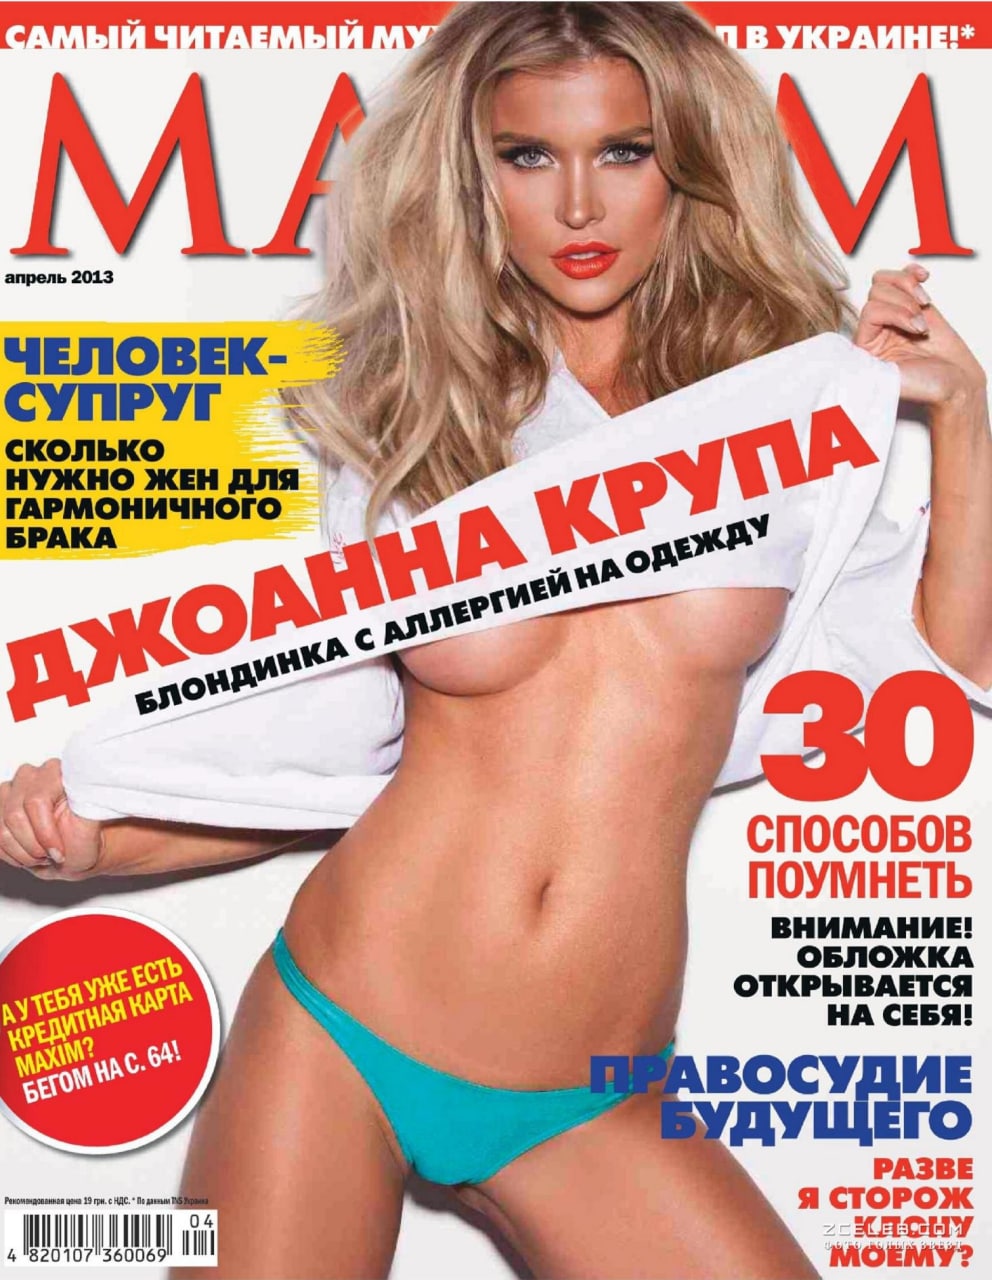 максим журнал фото девушек знаменитостей